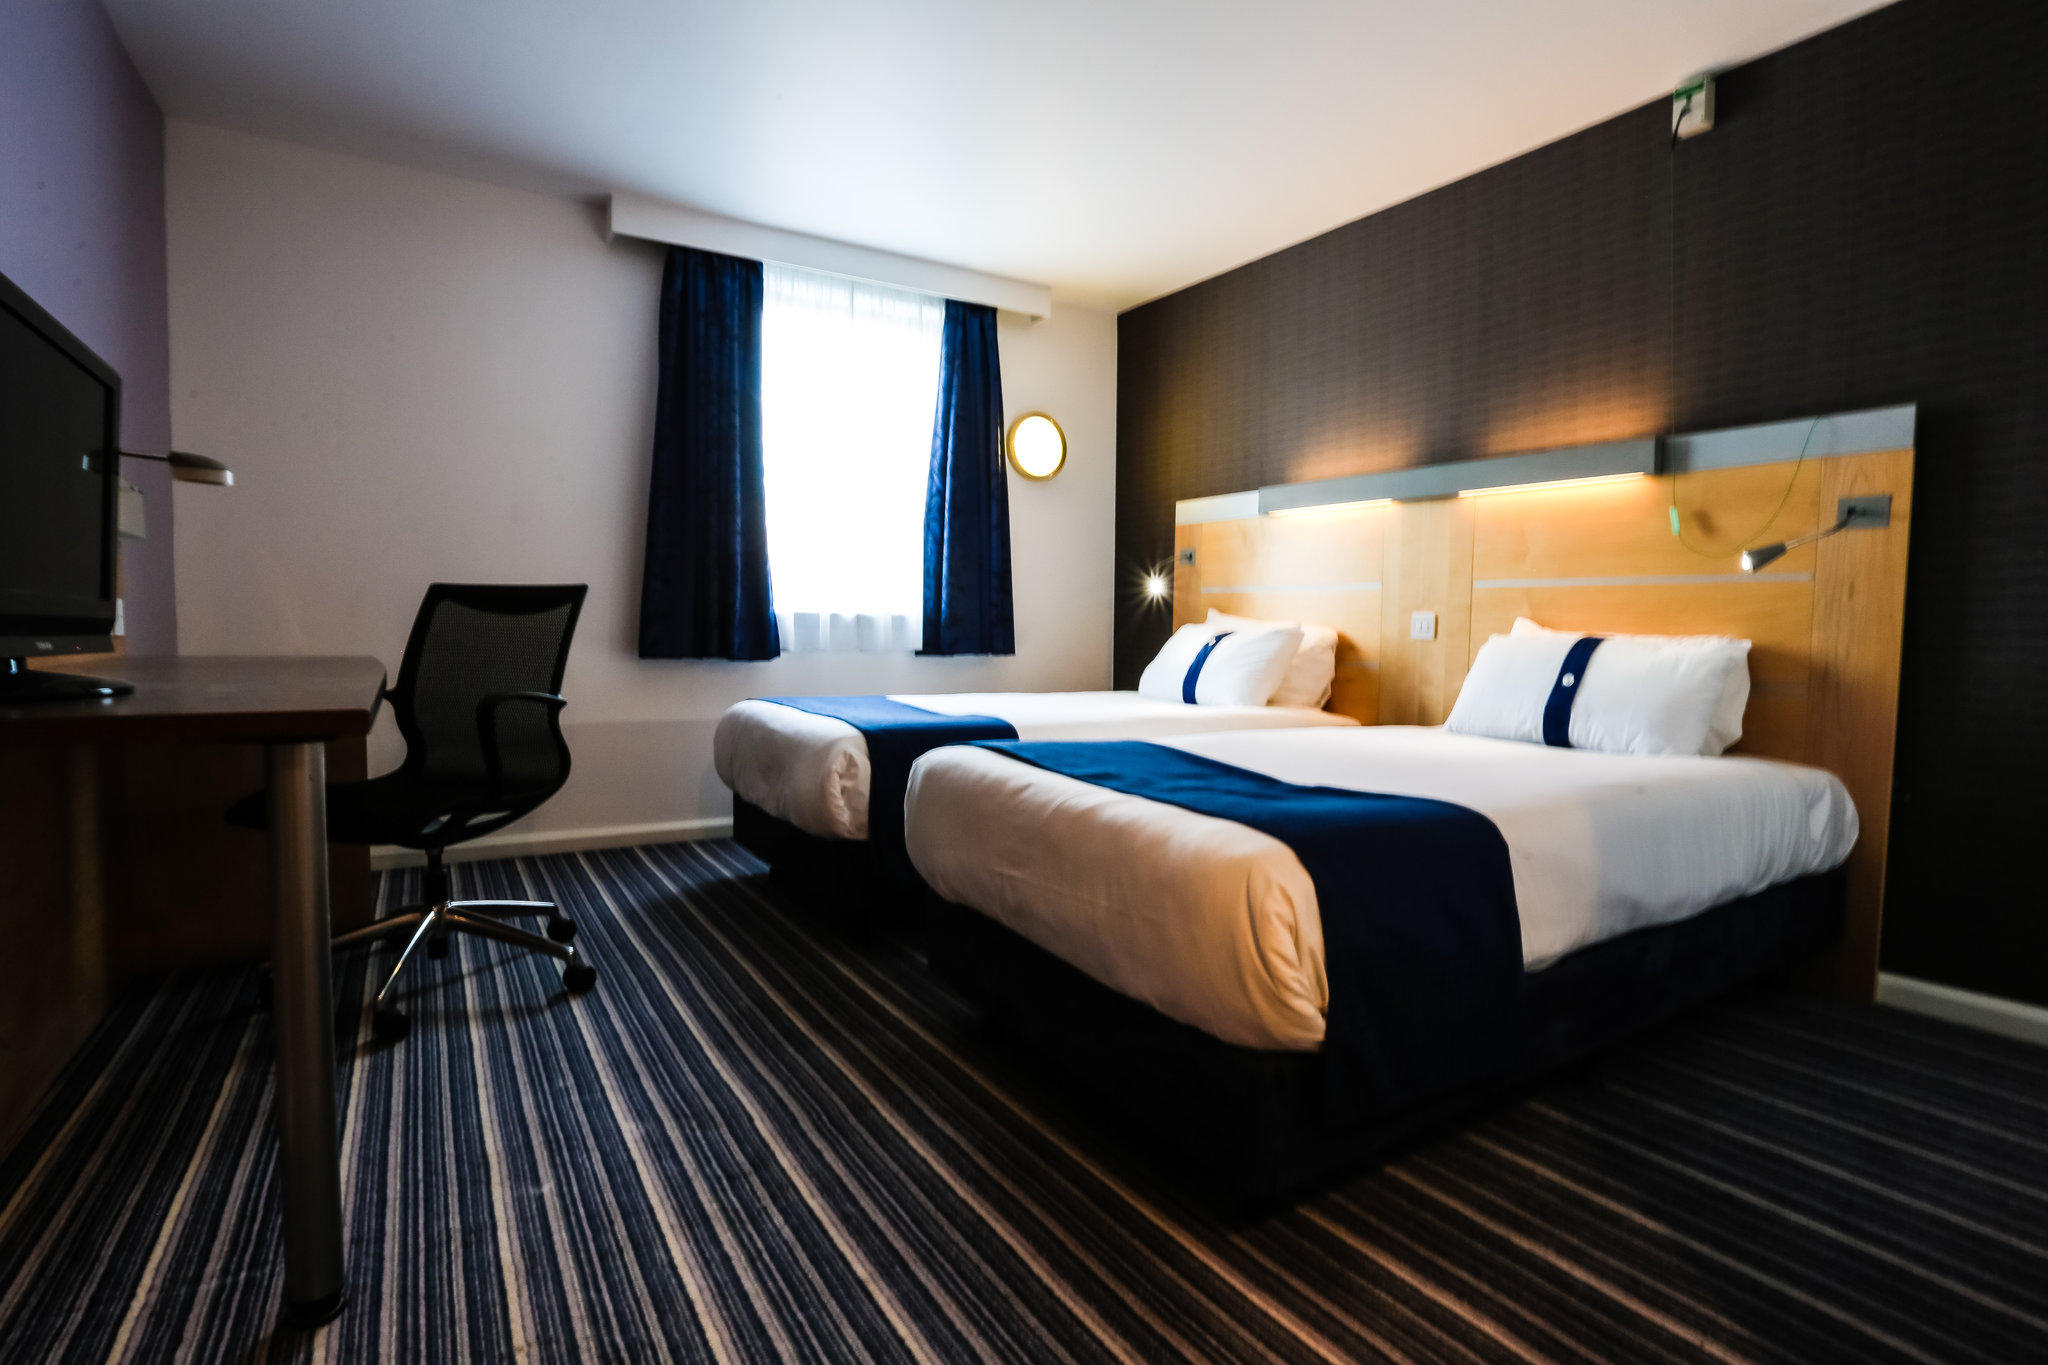 Holiday Inn Express Birmingham - Castle Bromwich, an IHG Hotel Birmingham 01216 946700